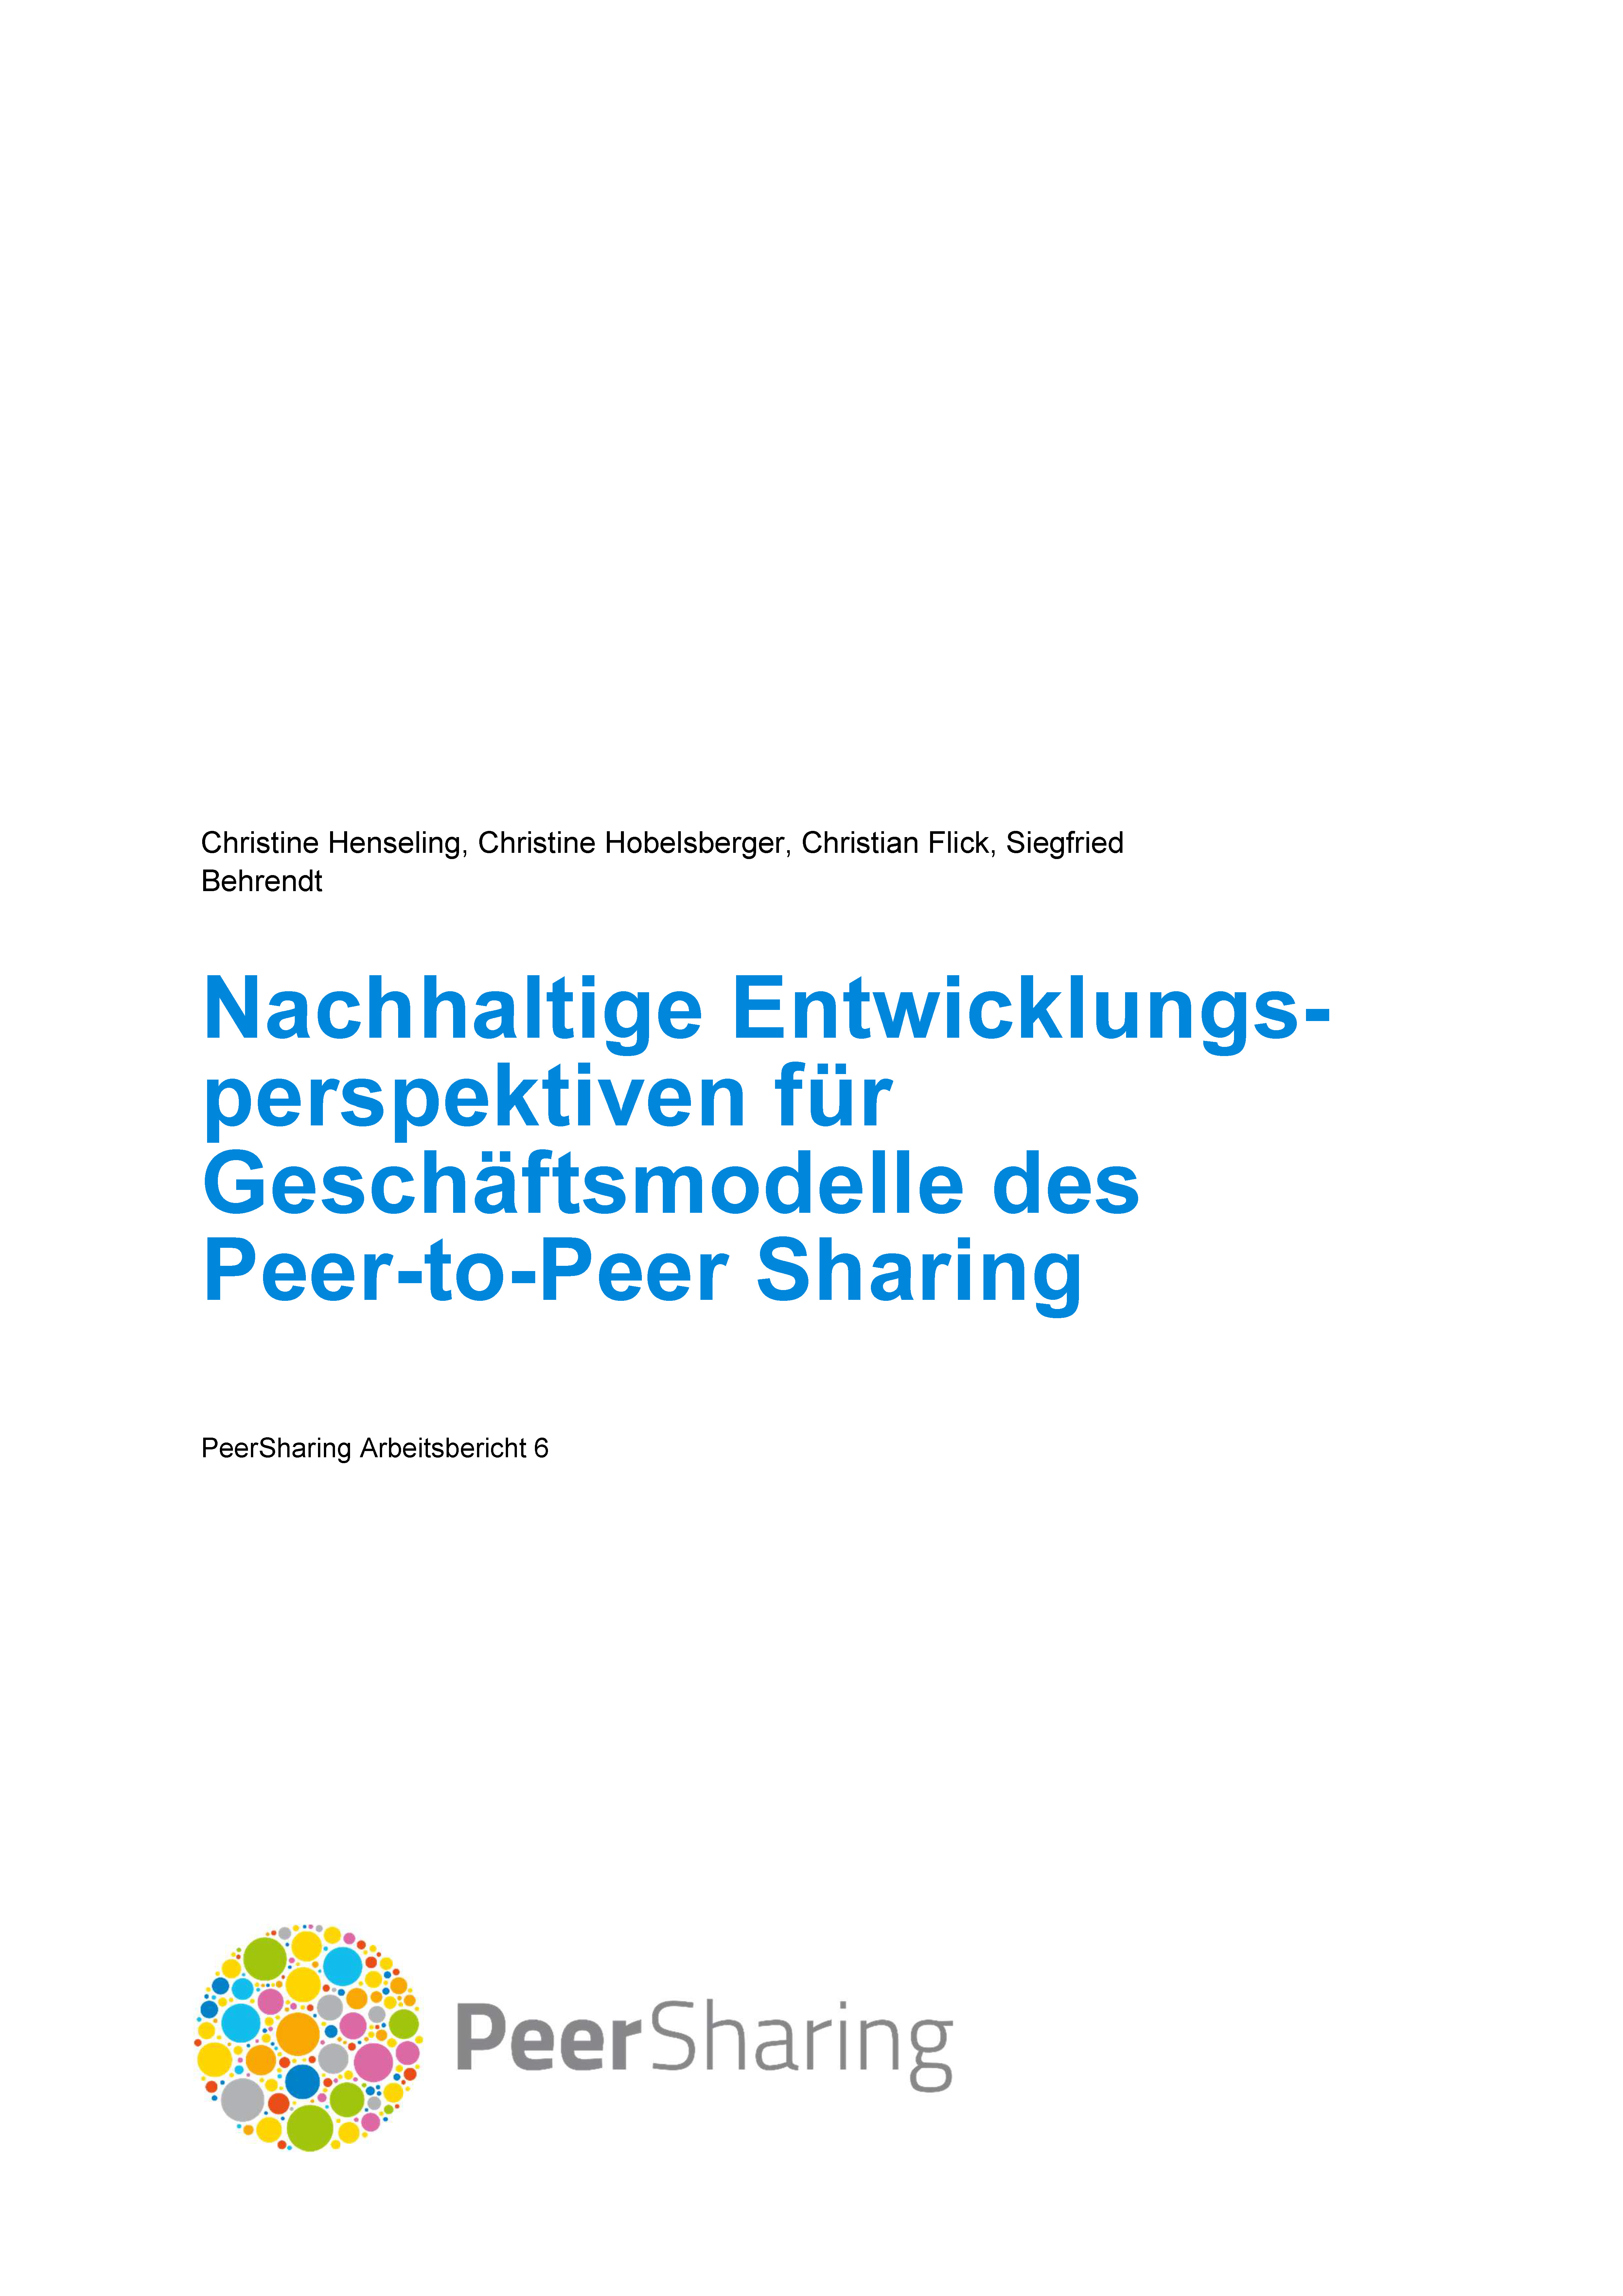 Nachhaltige Entwicklungsperspektiven für Geschäftsmodelle des Peer-to-Peer Sharing